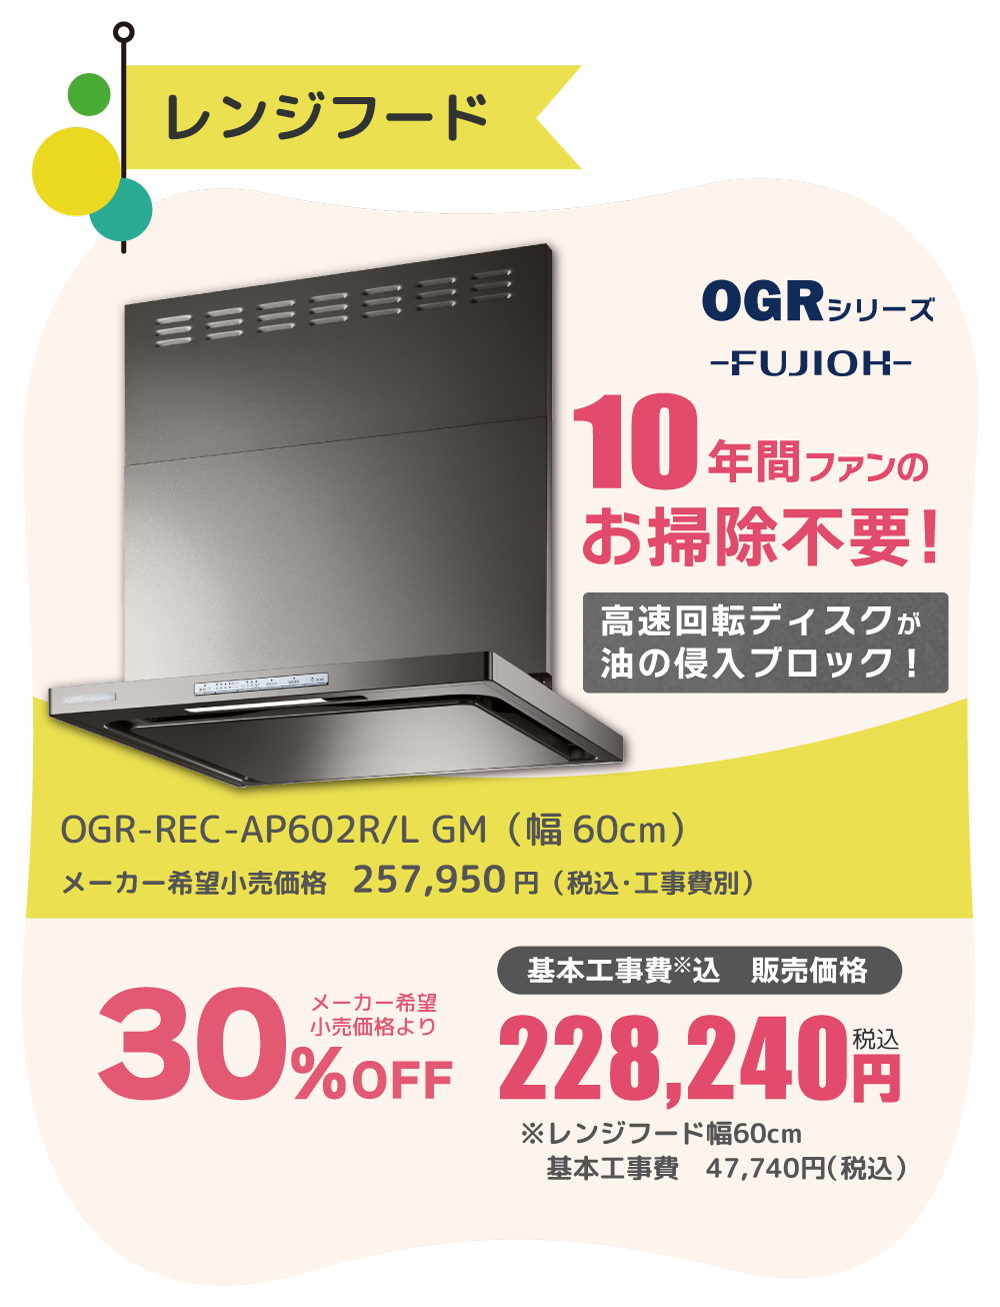 レンジフード FUJIOH OGRシリーズ 25%OFF